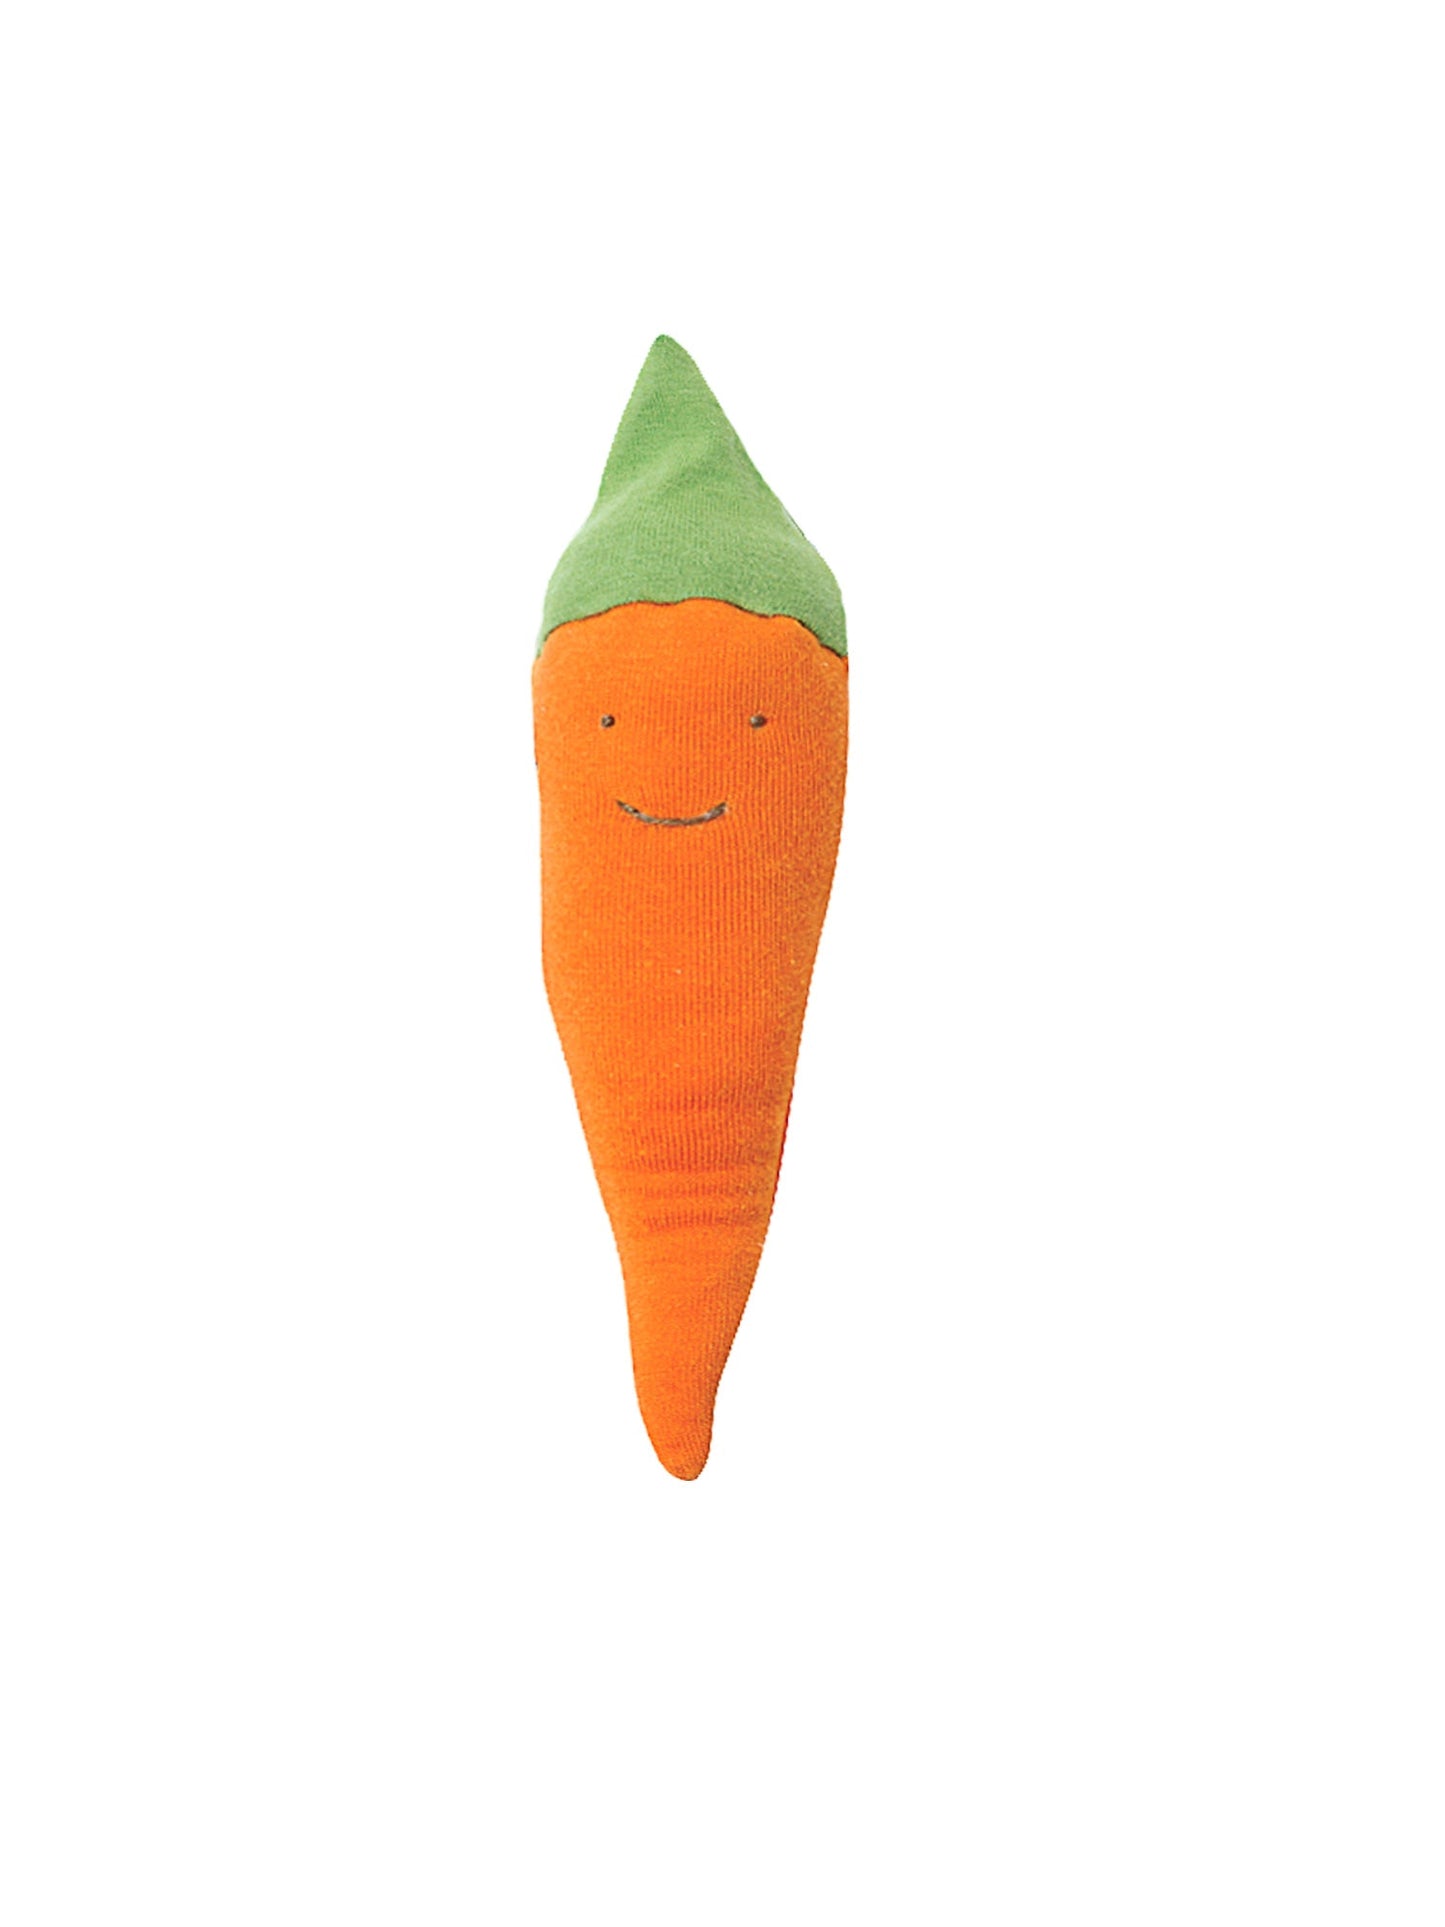 Carrot Veggie Toy